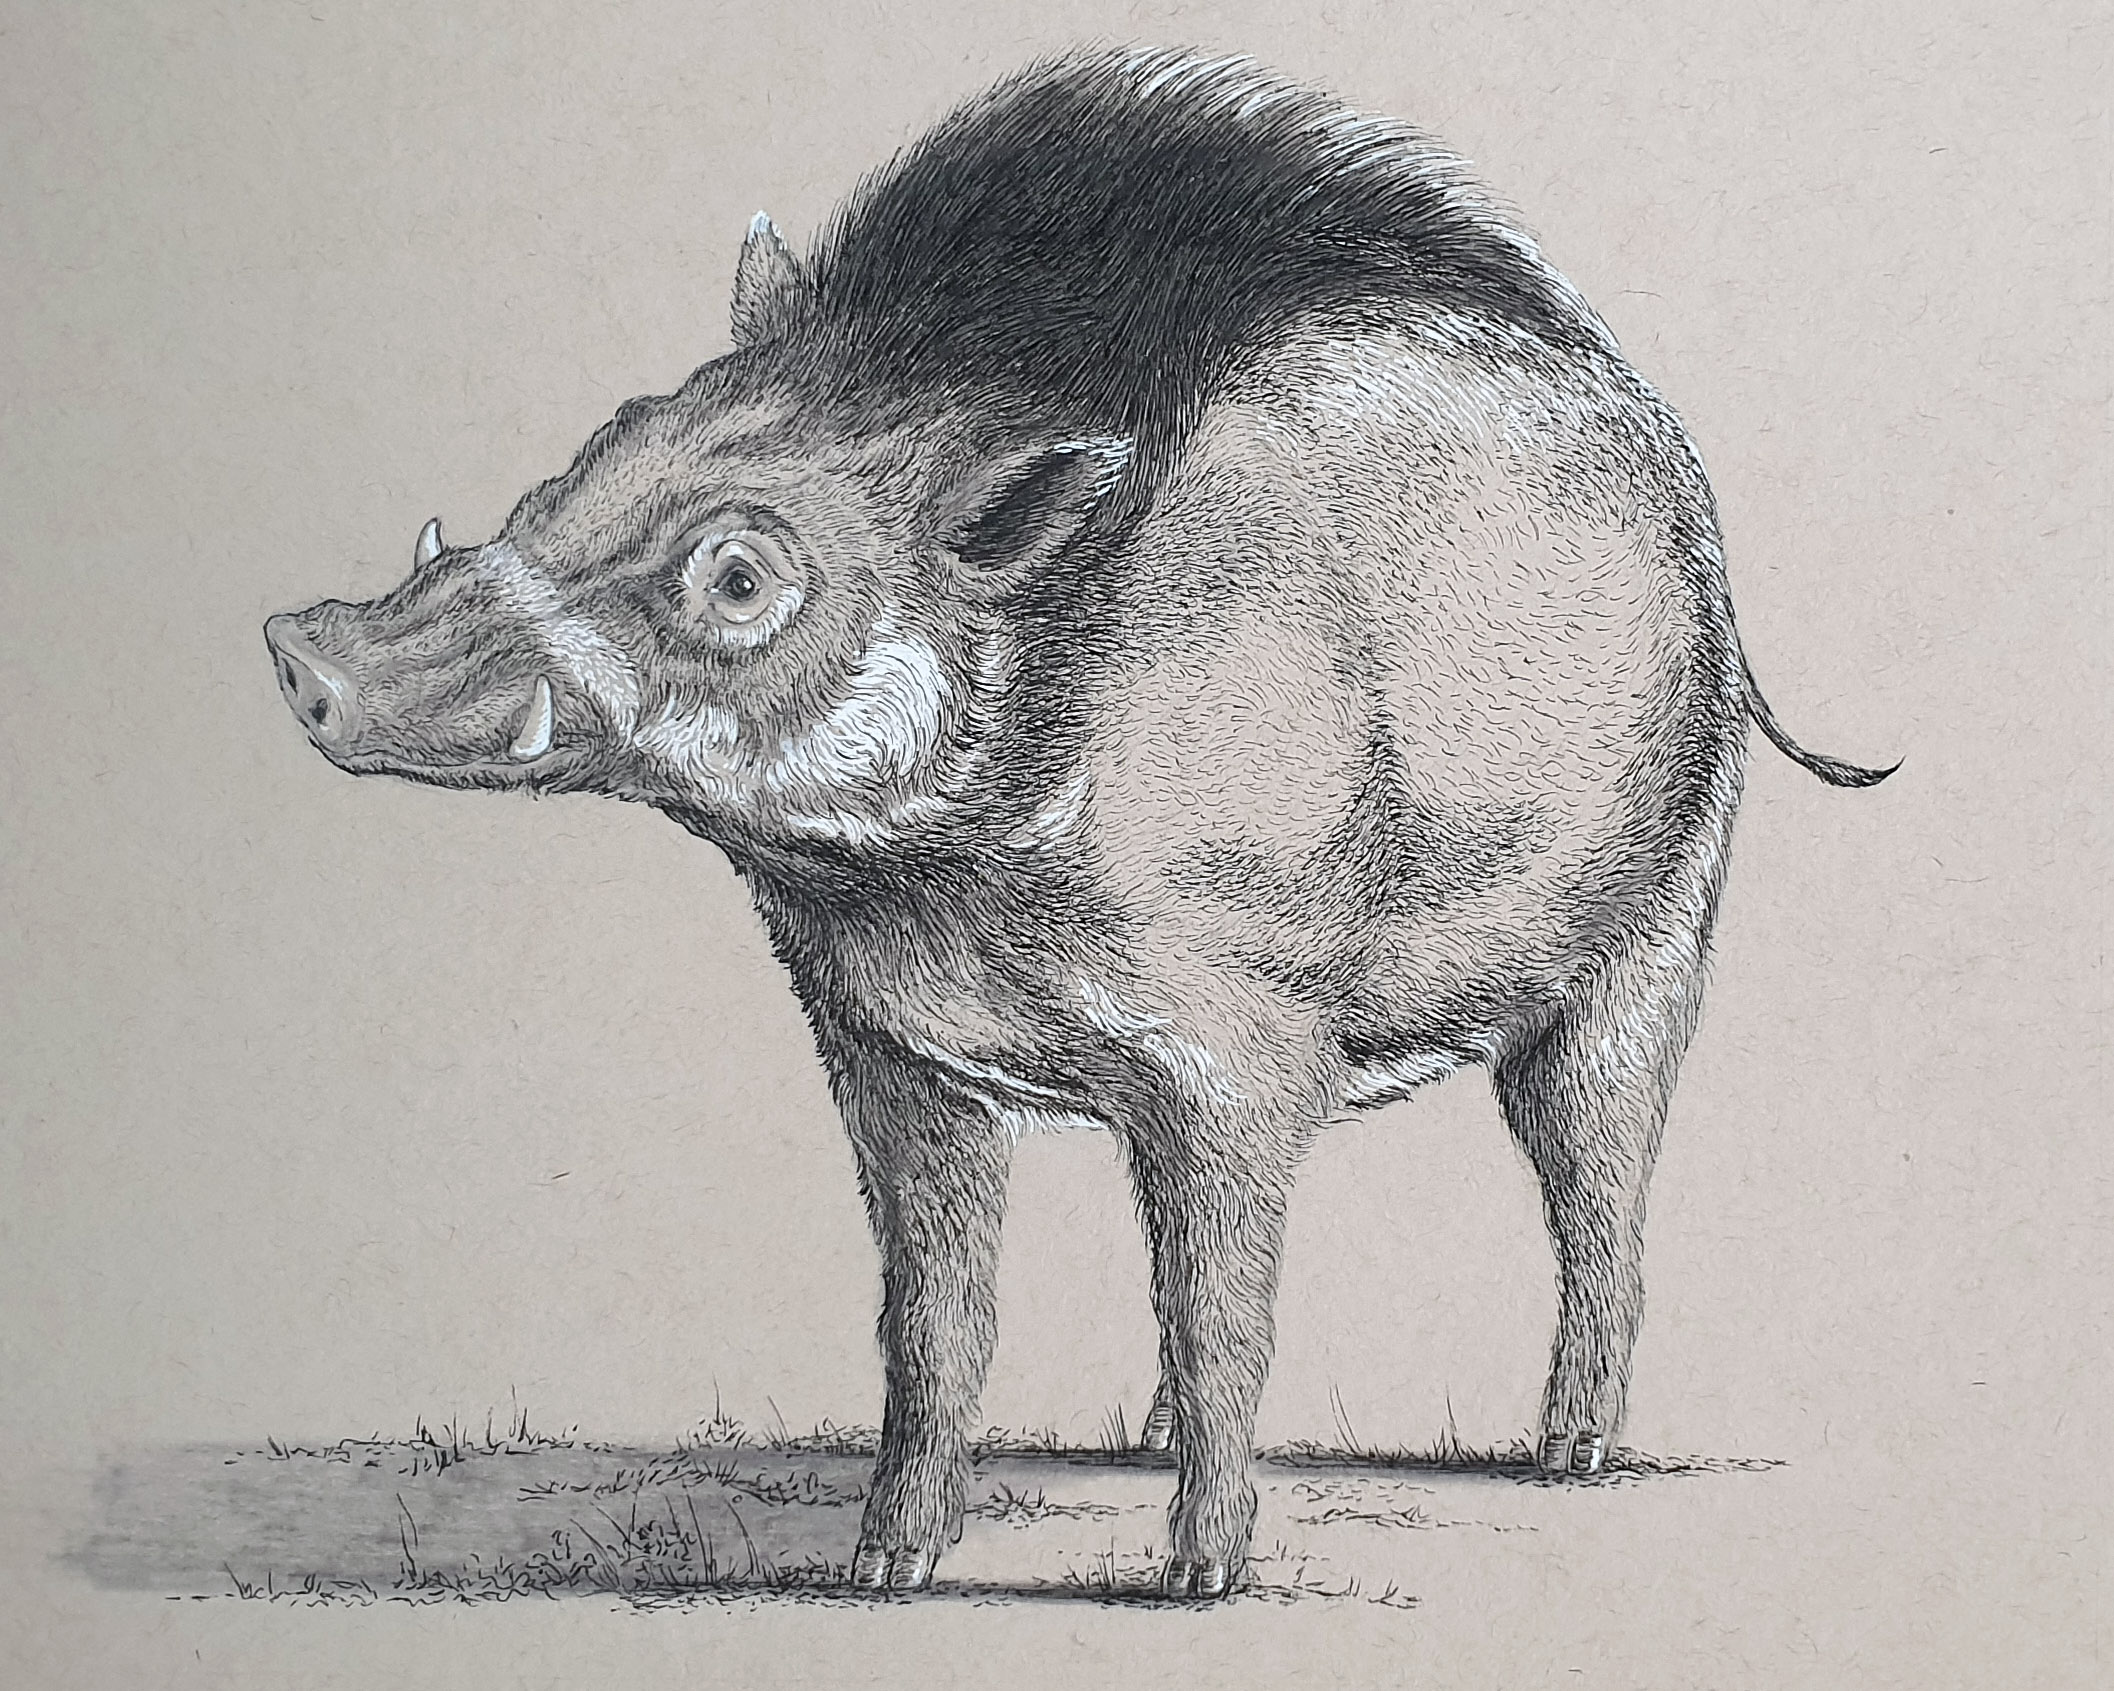 Day 25: Visayan Warty Pig